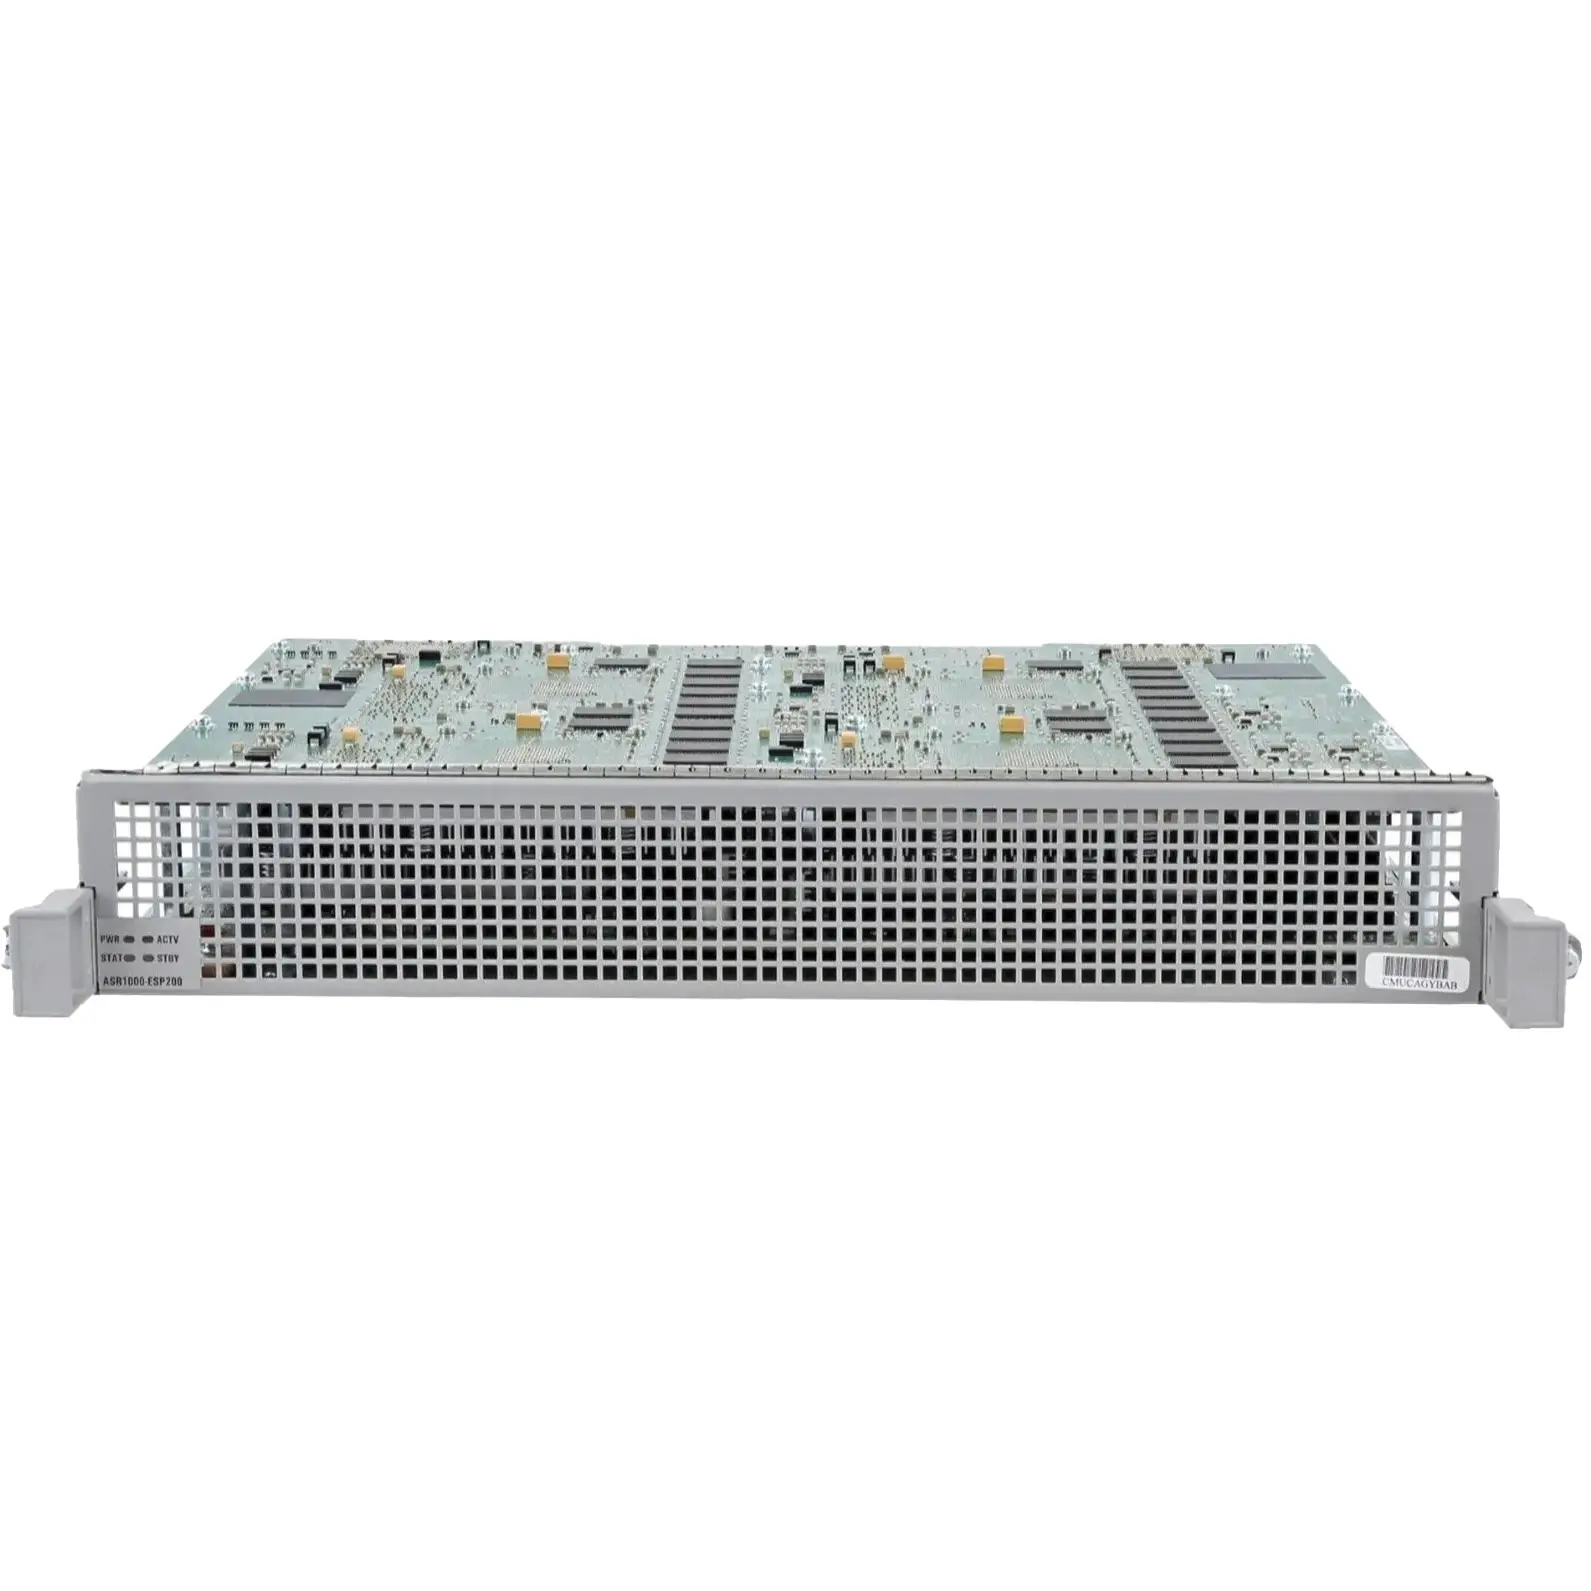 Orijinal ASR1000-ESP200 yönlendirici ASR 1000 serisi gömülü hizmetler İşlemci ASR 1000 yönlendirici modülü